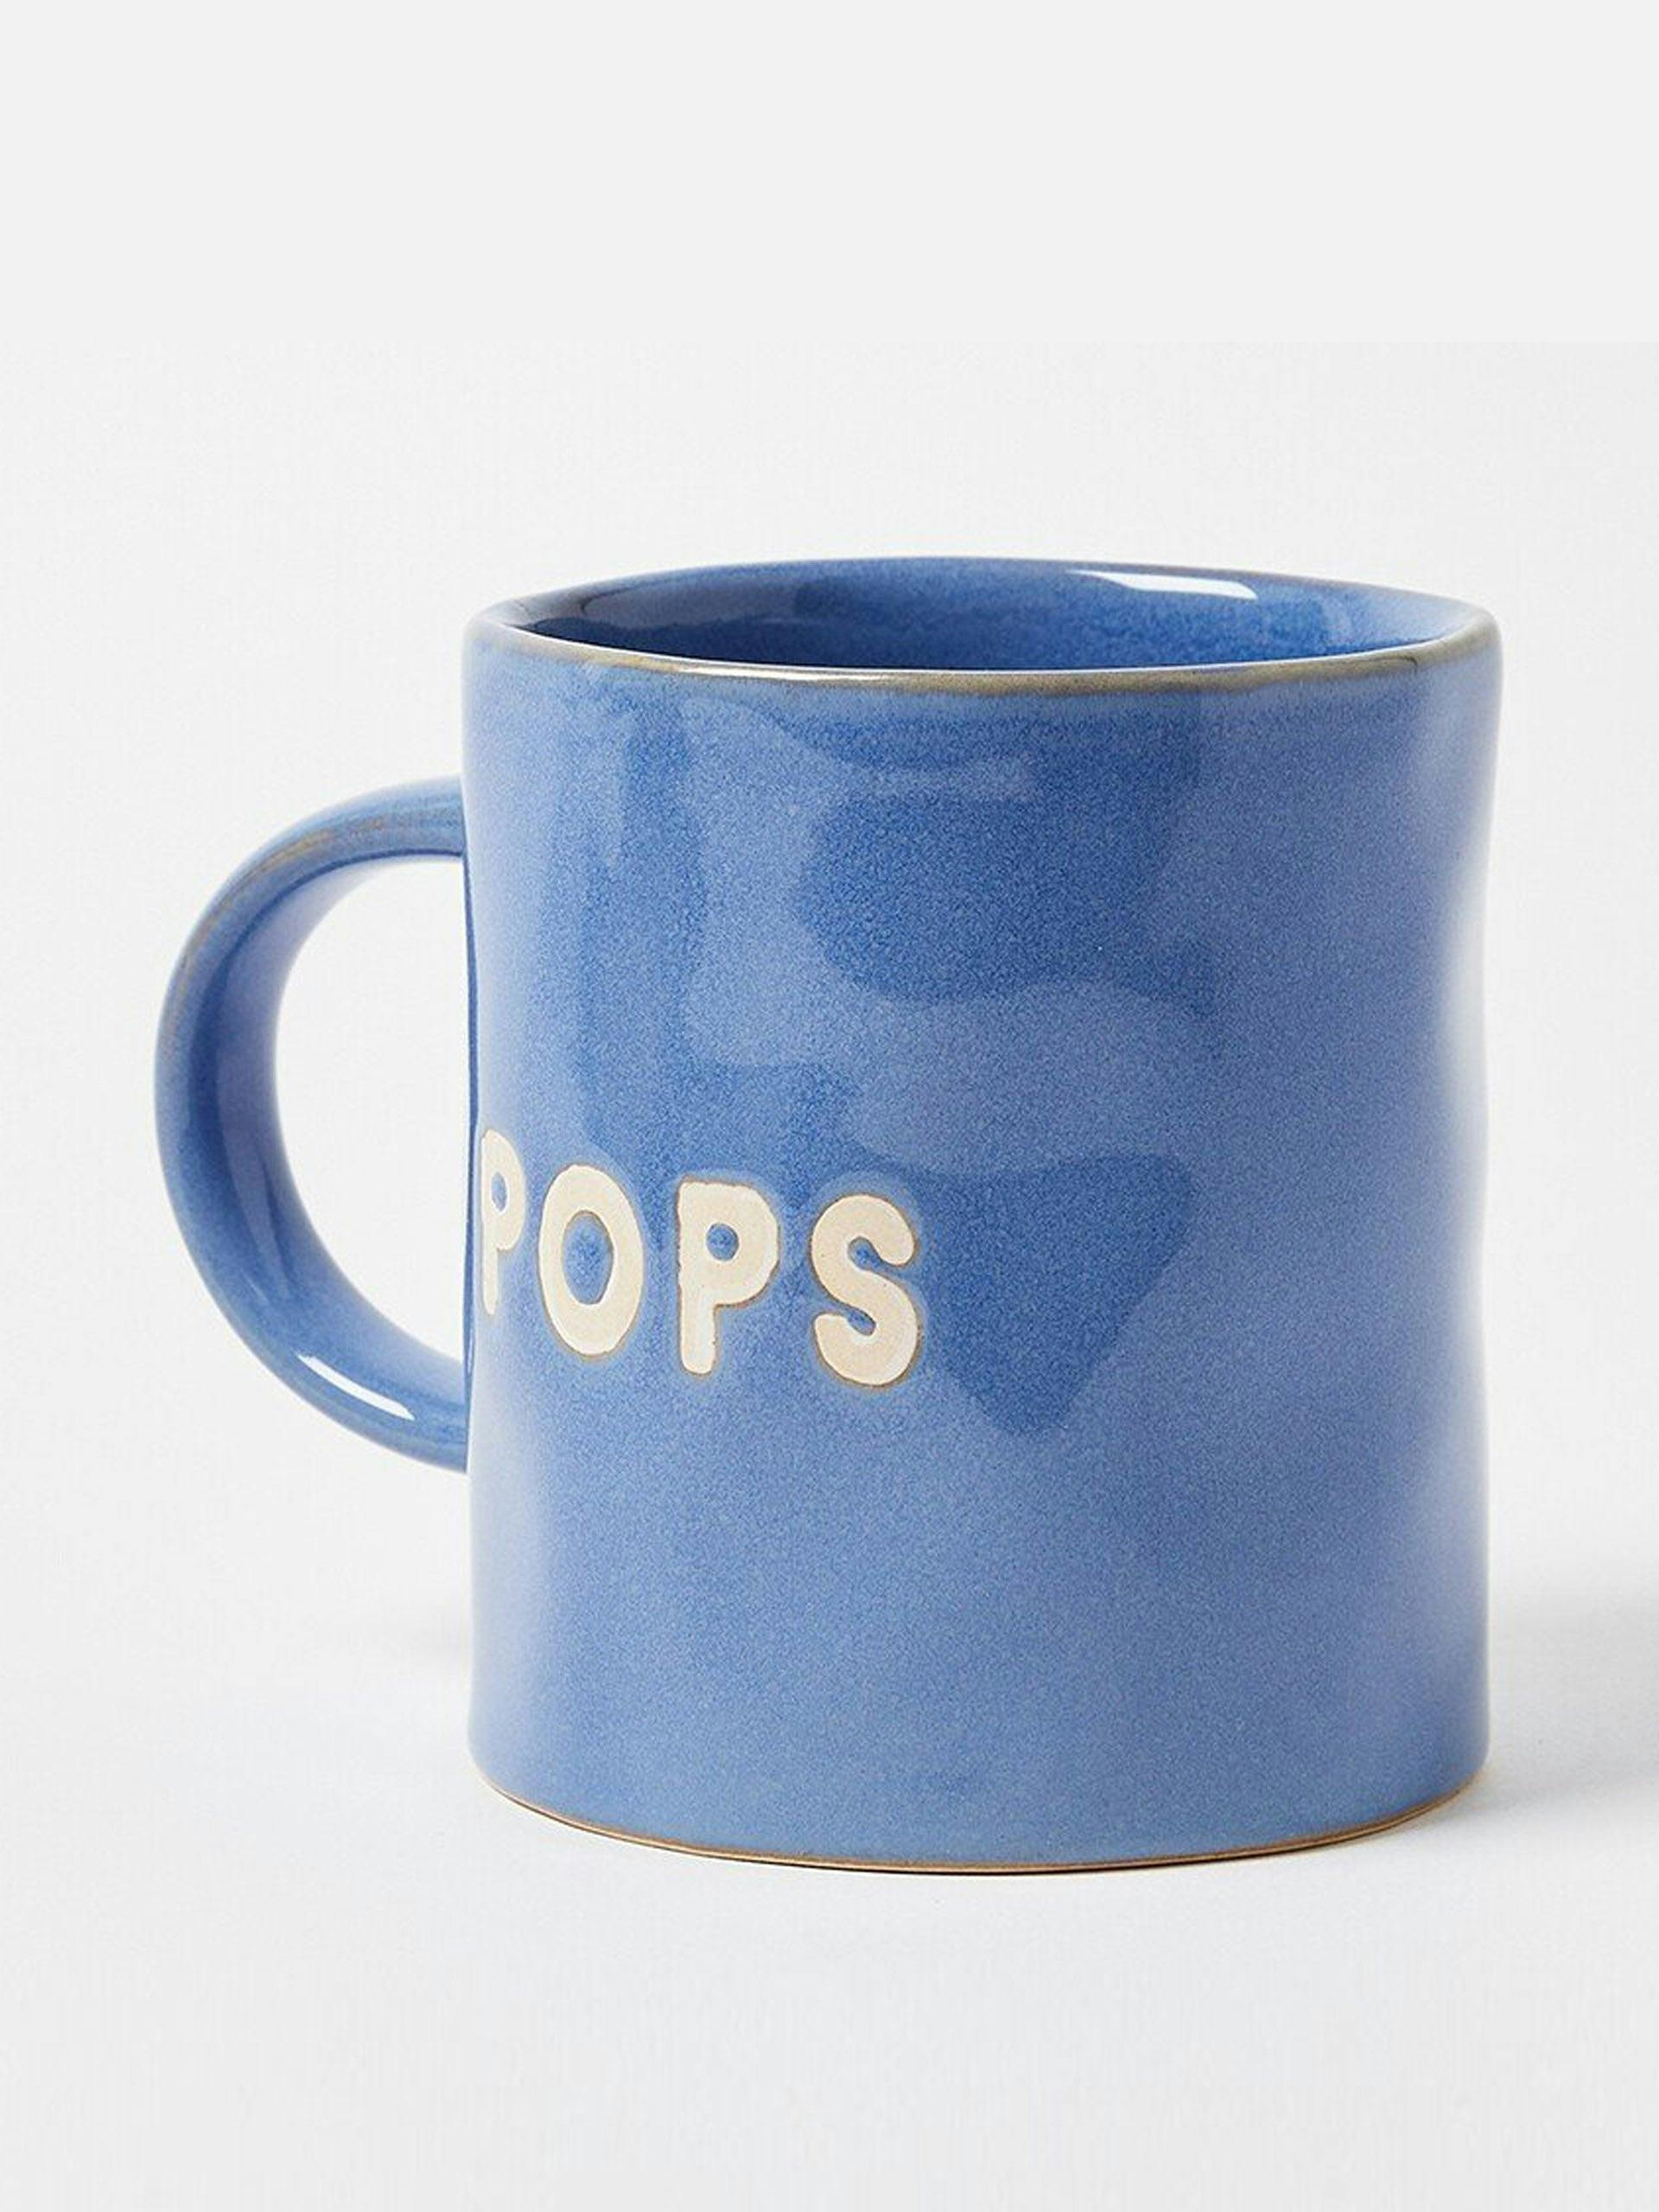 Pops blue ceramic mug